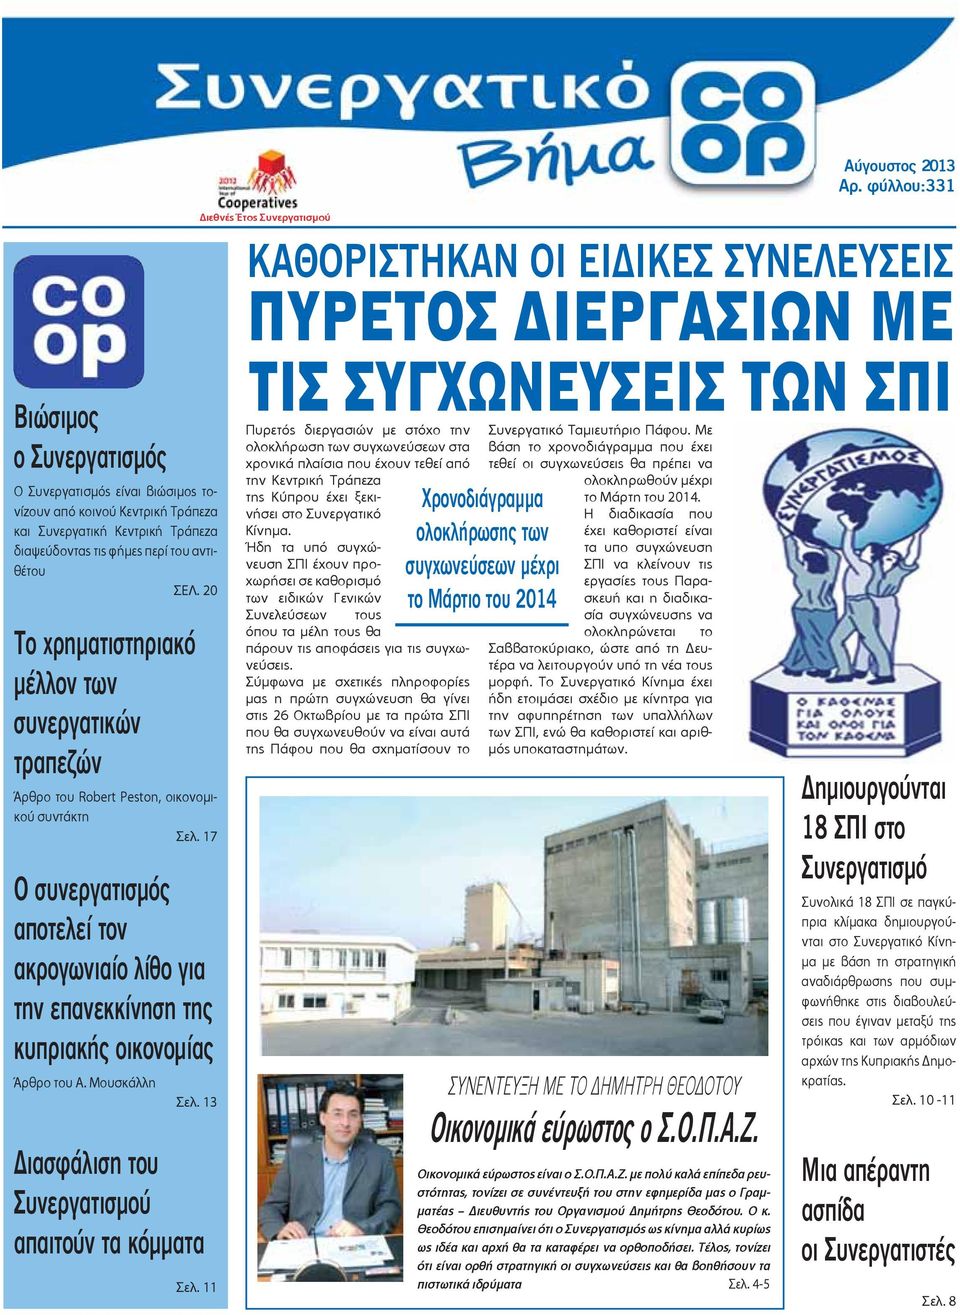 17 Ο συνεργατισμός αποτελεί τον ακρογωνιαίο λίθο για την επανεκκίνηση της κυπριακής οικονομίας Άρθρο του Α. Μουσκάλλη Σελ. 13 ιασφάλιση του Συνεργατισμού απαιτούν τα κόμματα Σελ.